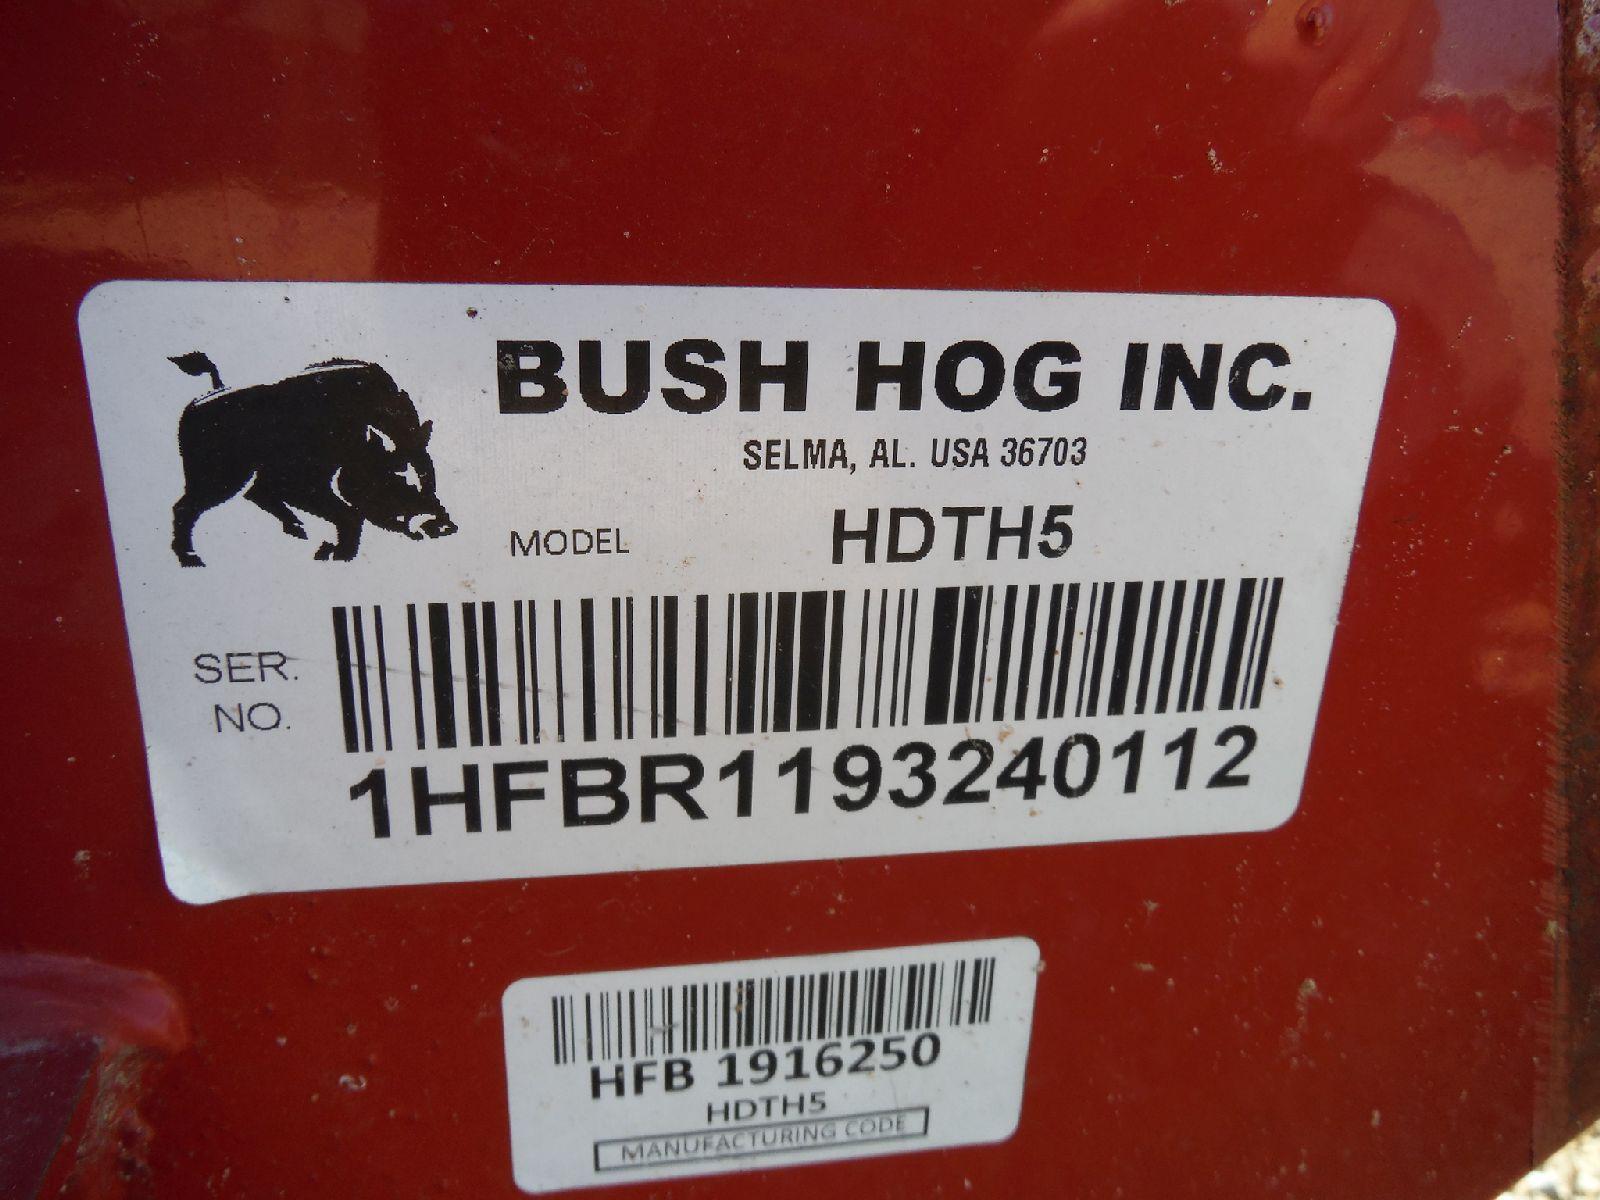 Bush Hog HDTH5 5' Finishing Mower, s/n 1HFBR1193240112